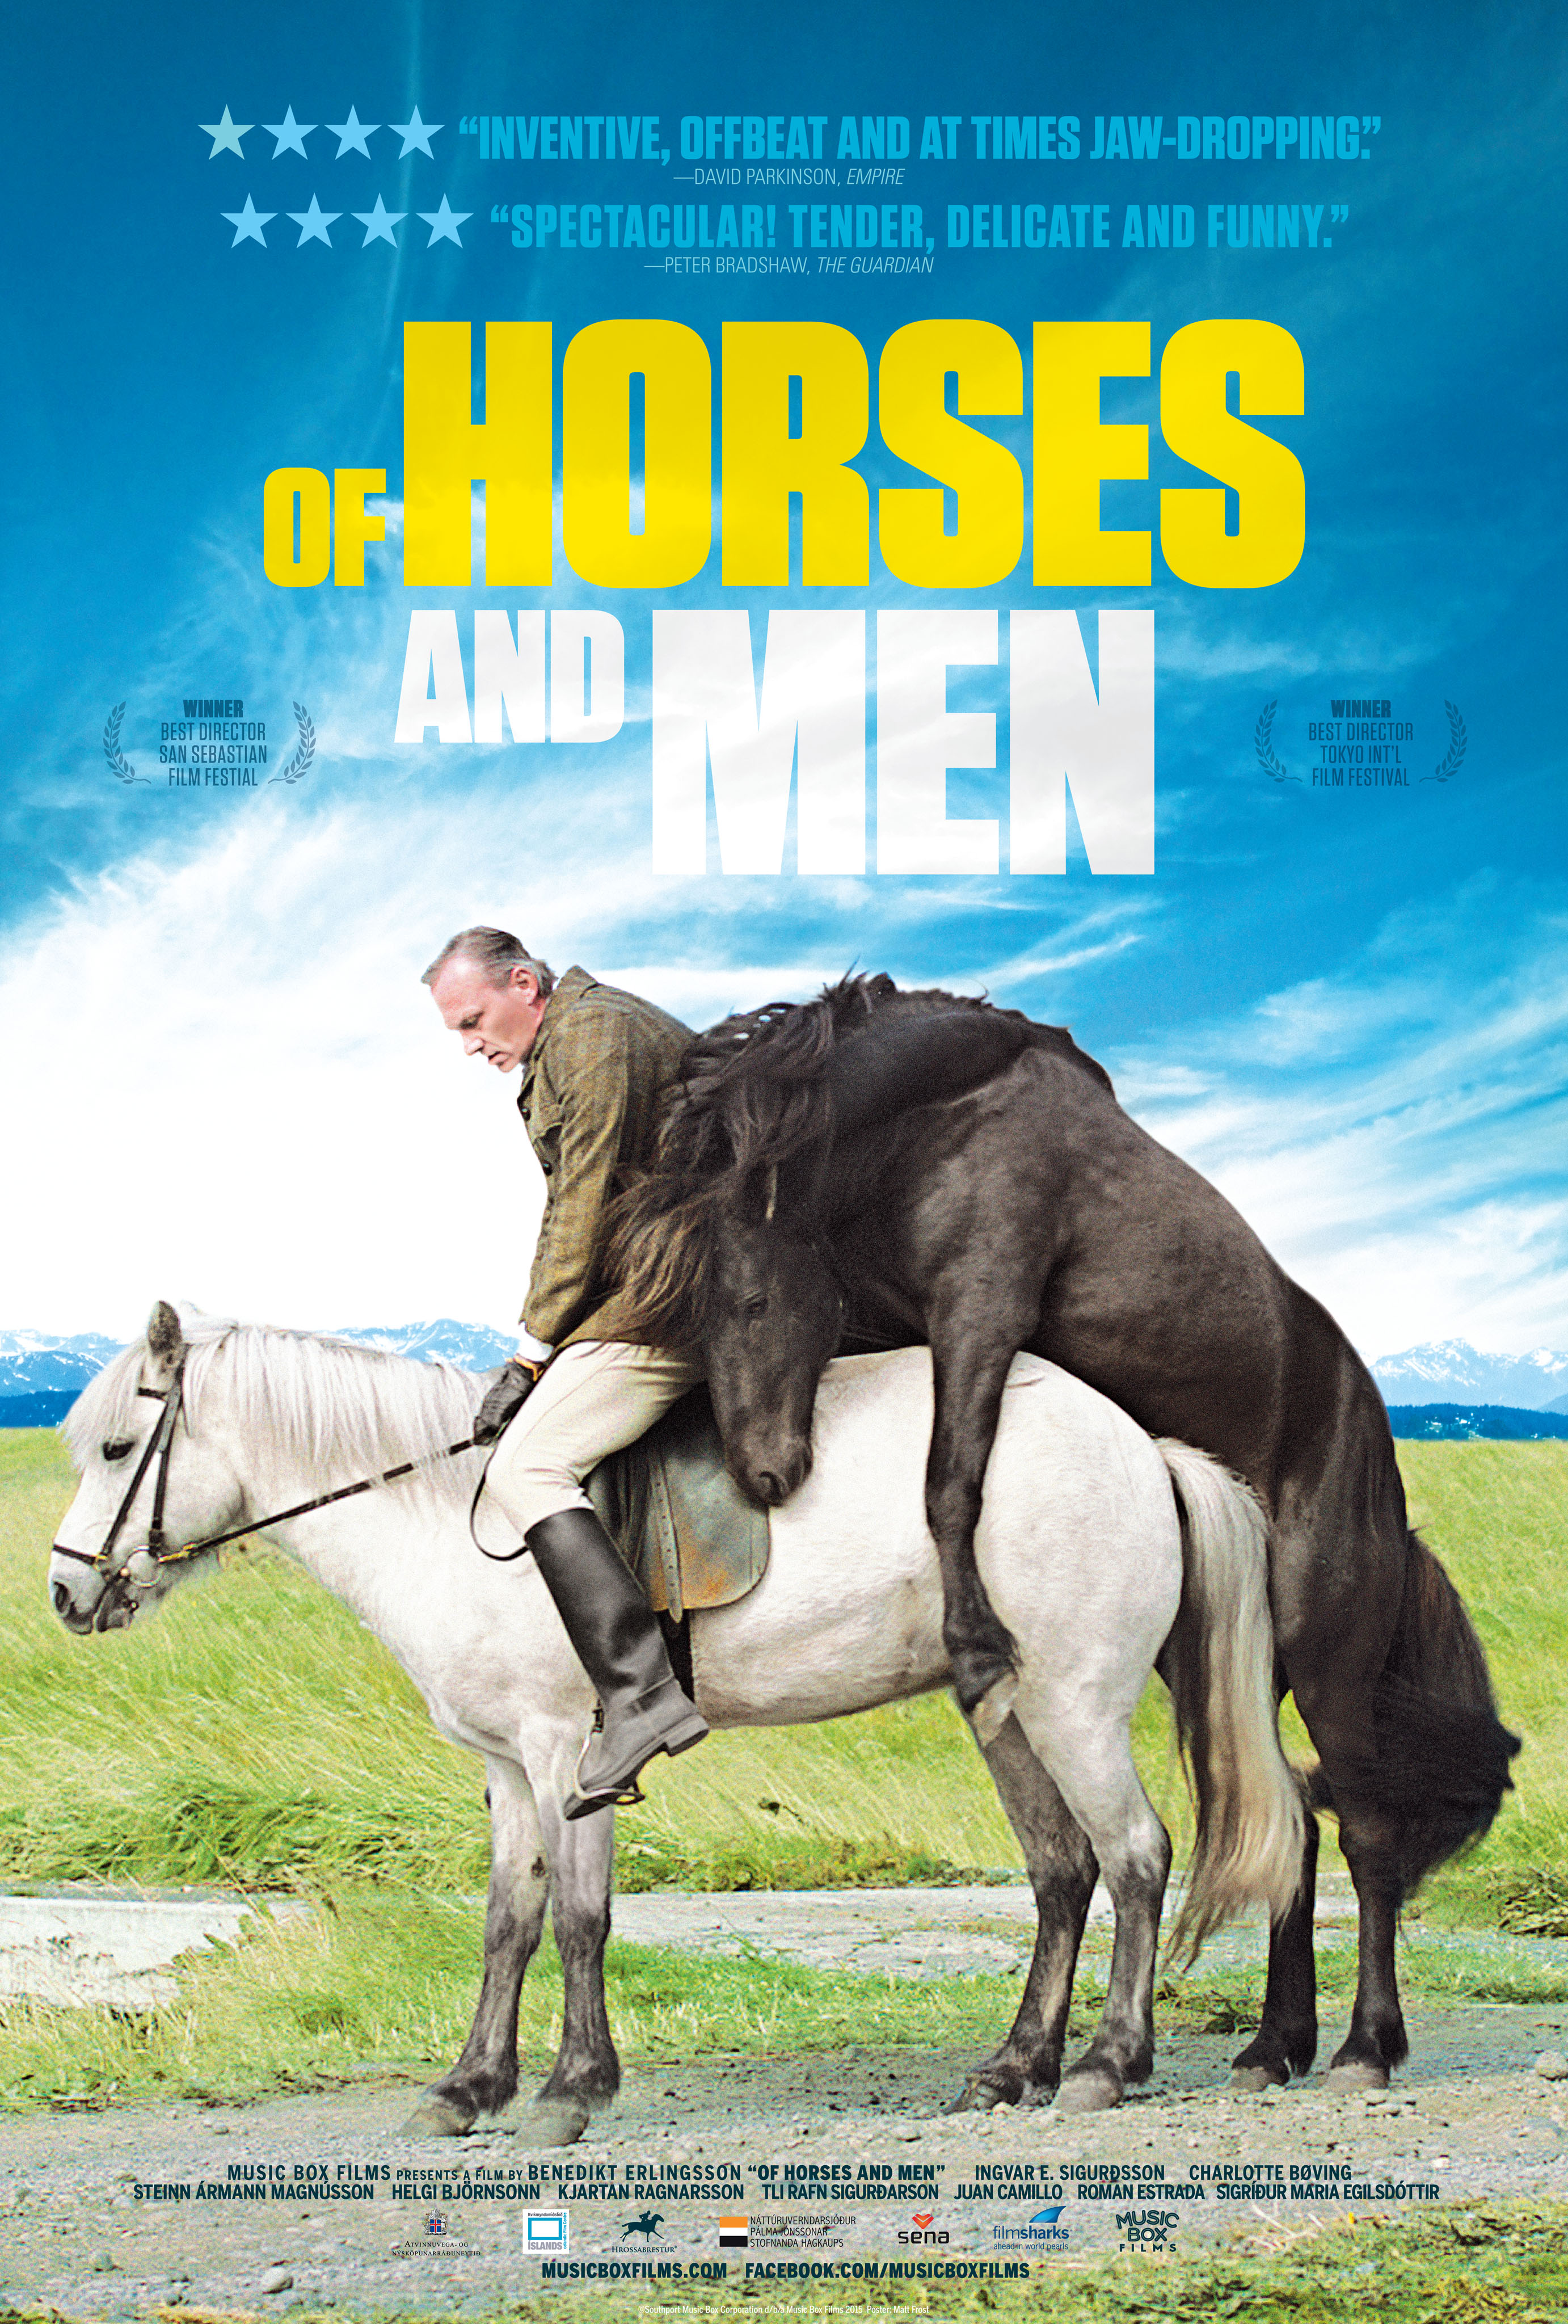 Of Horses and Men (2013) Screenshot 4 